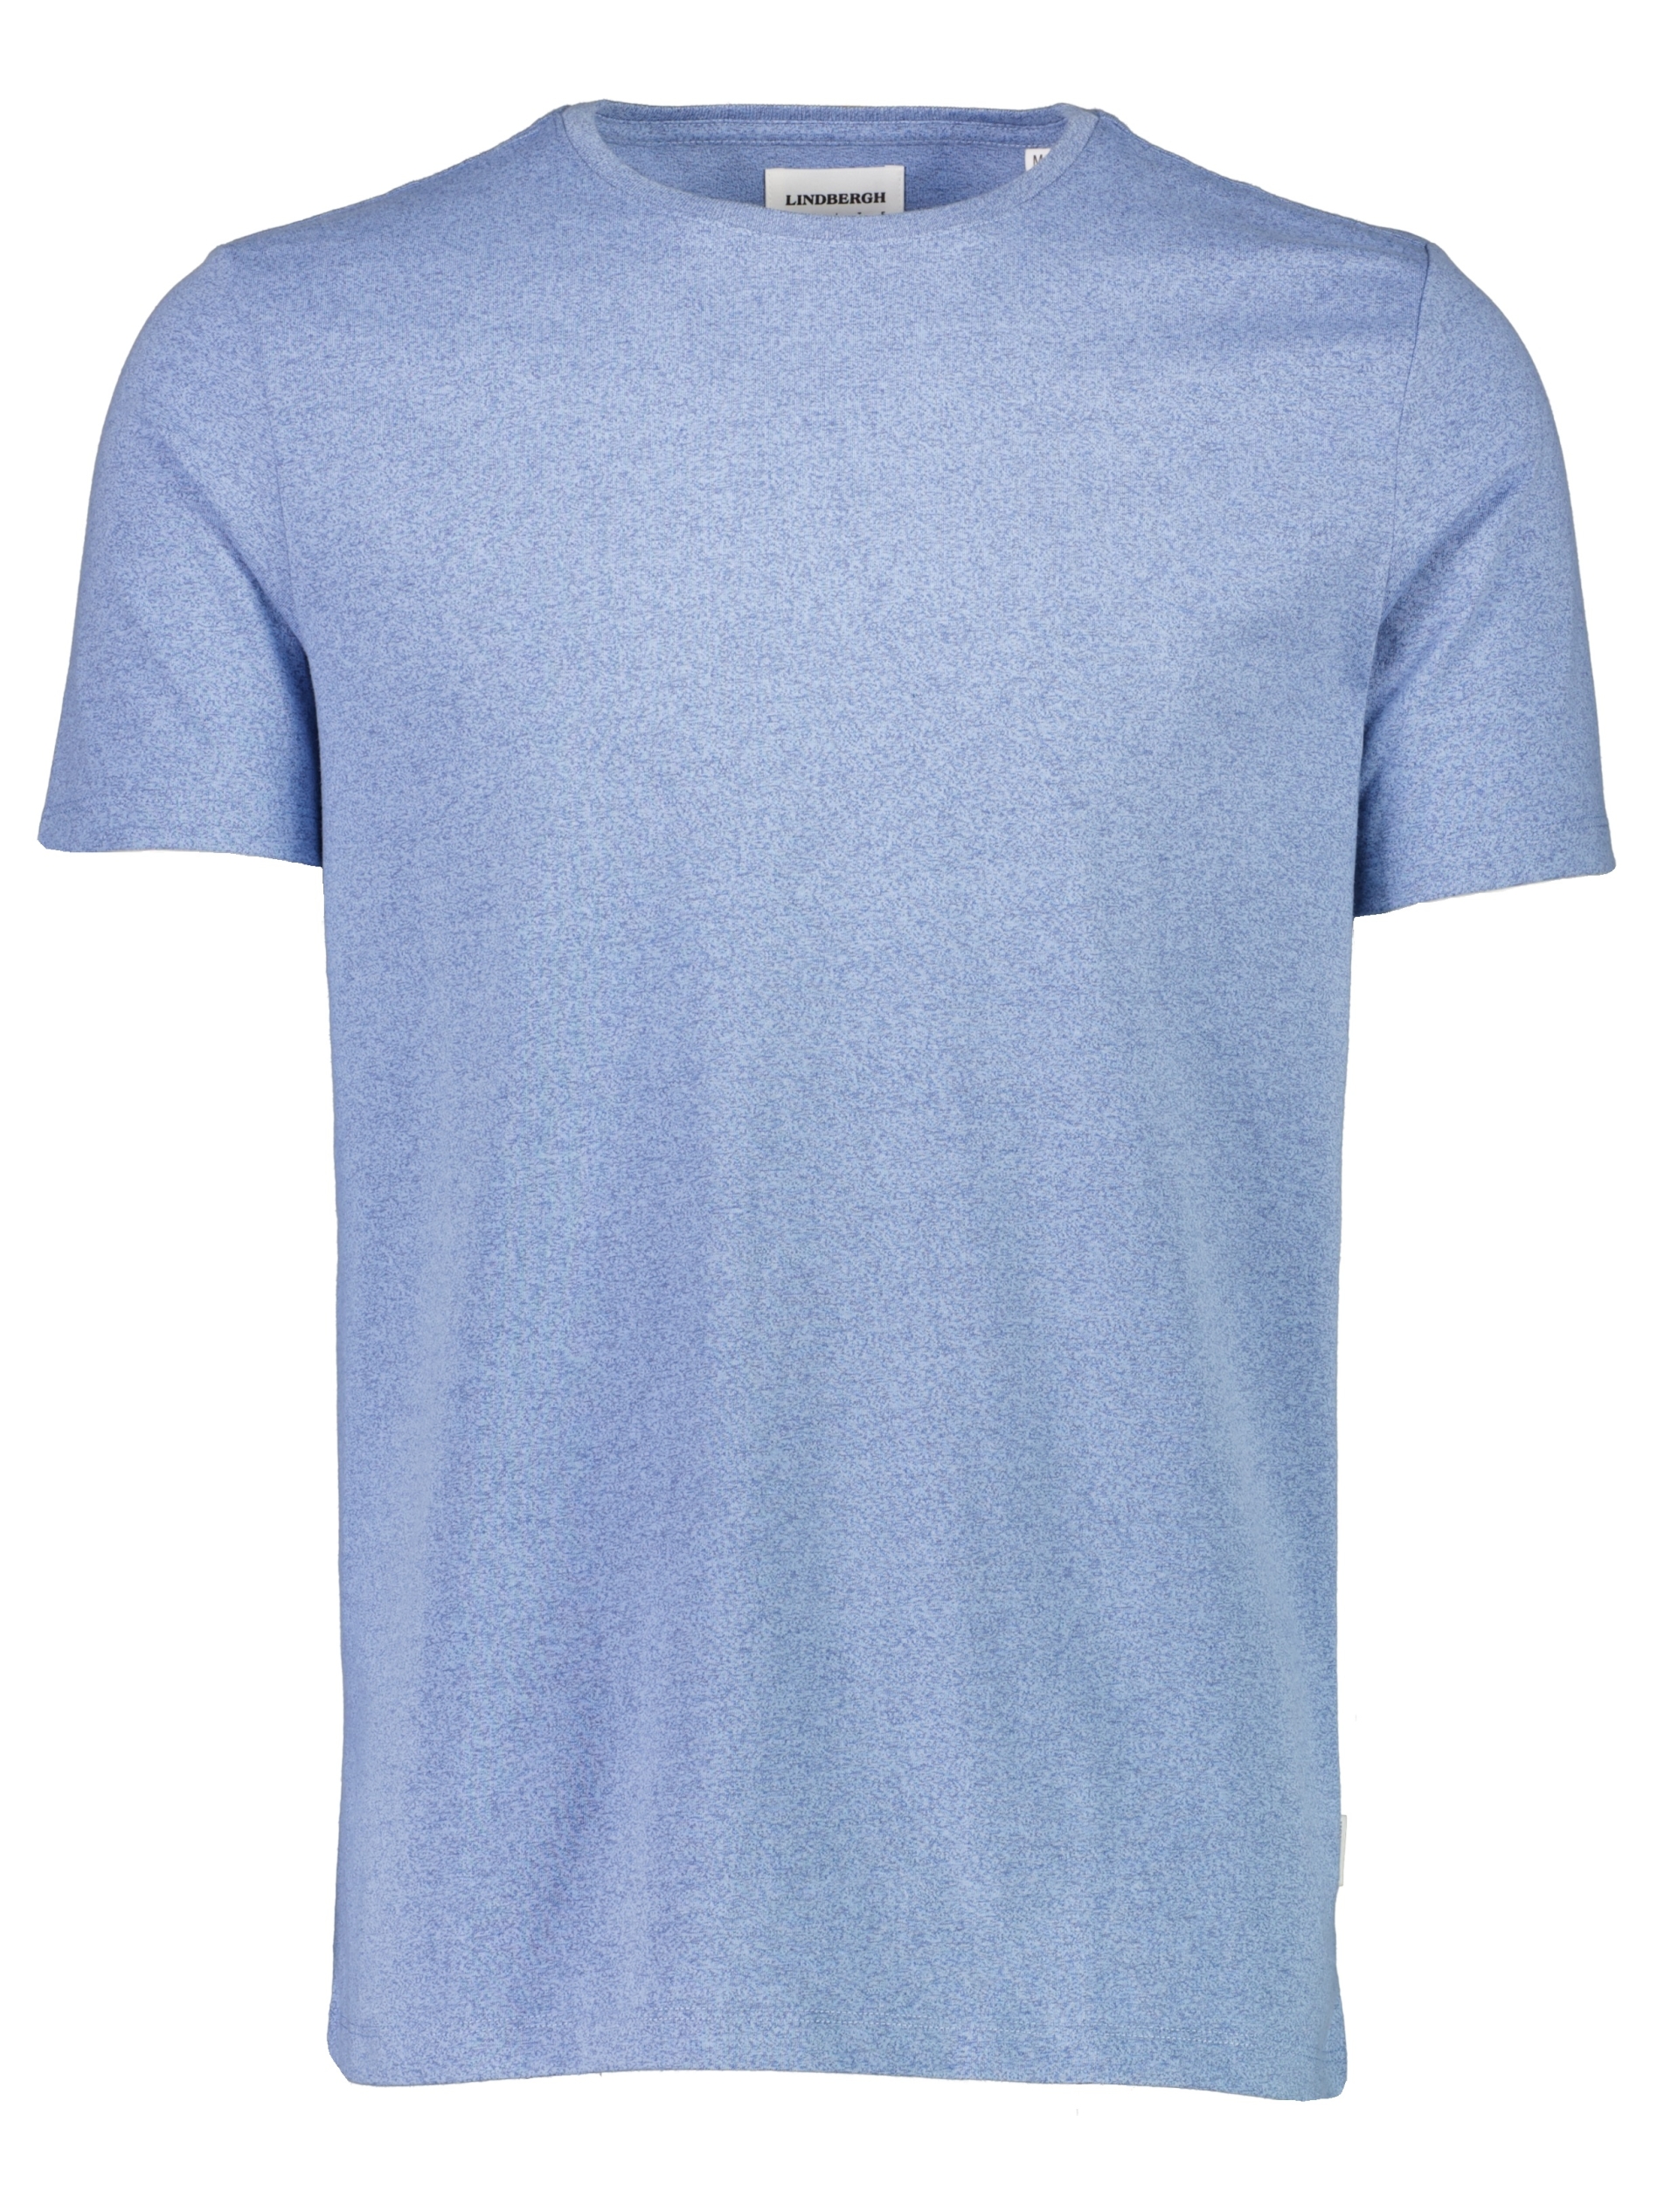 Lindbergh T-shirt blå / new dk blue mix